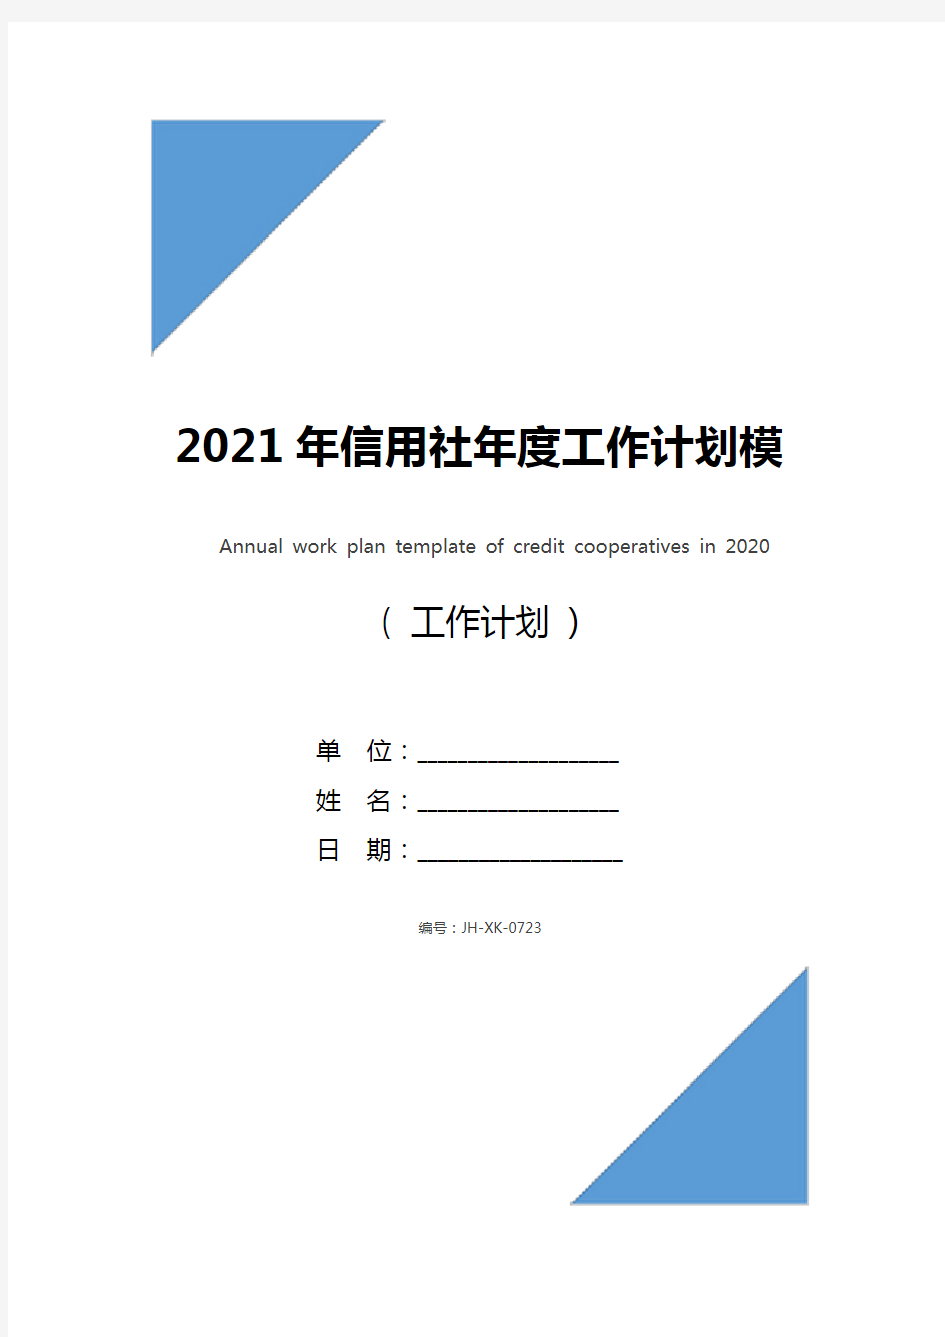 2021年信用社年度工作计划模板(最新版)